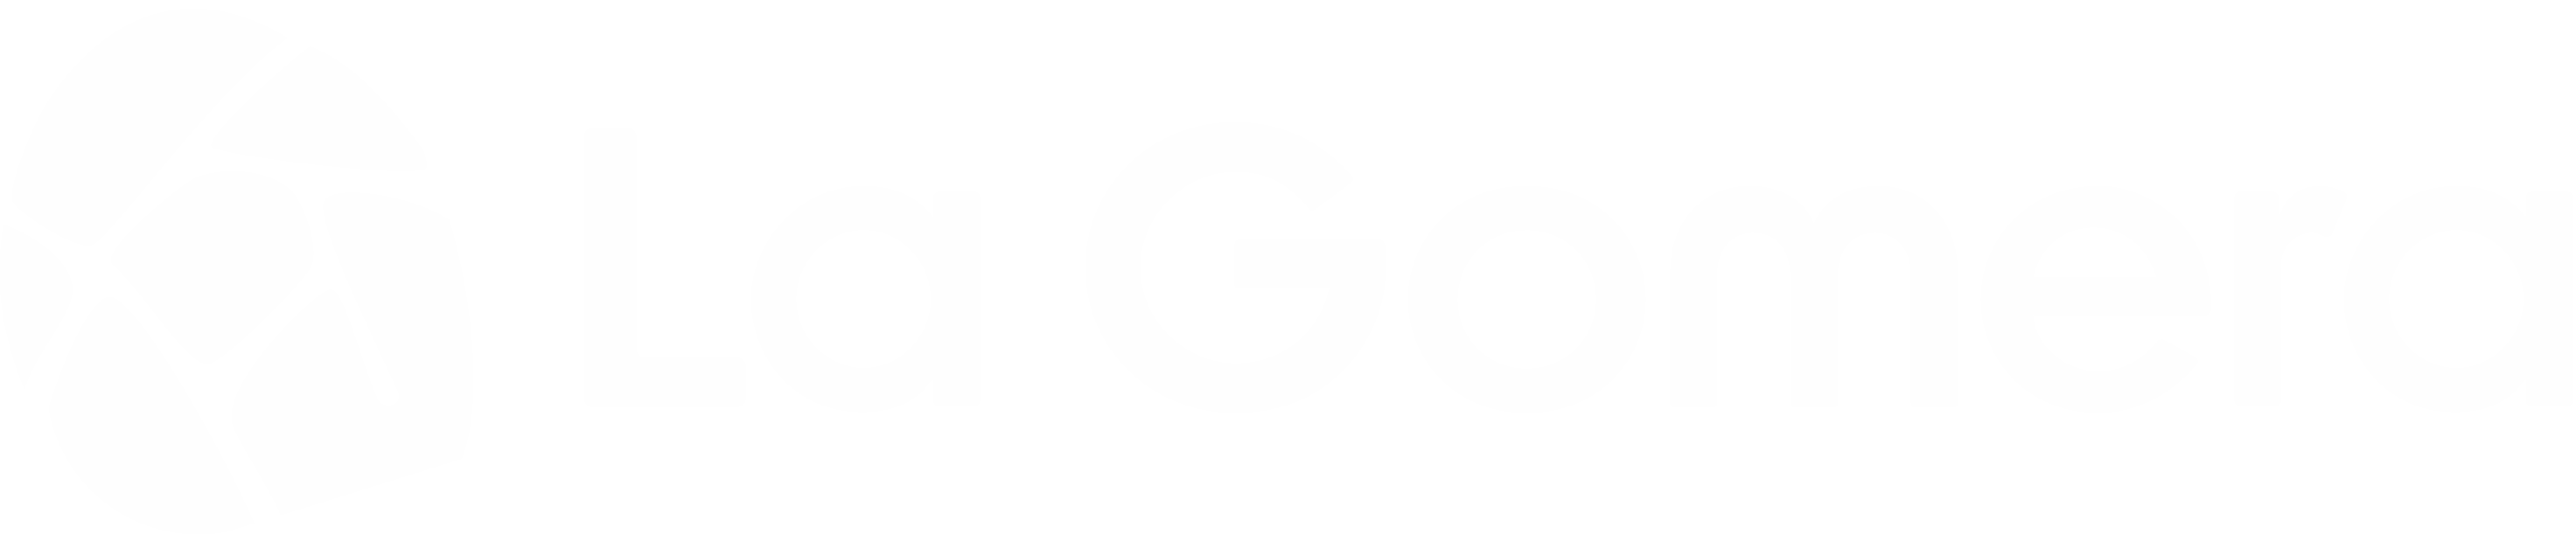 LaGomera Logo